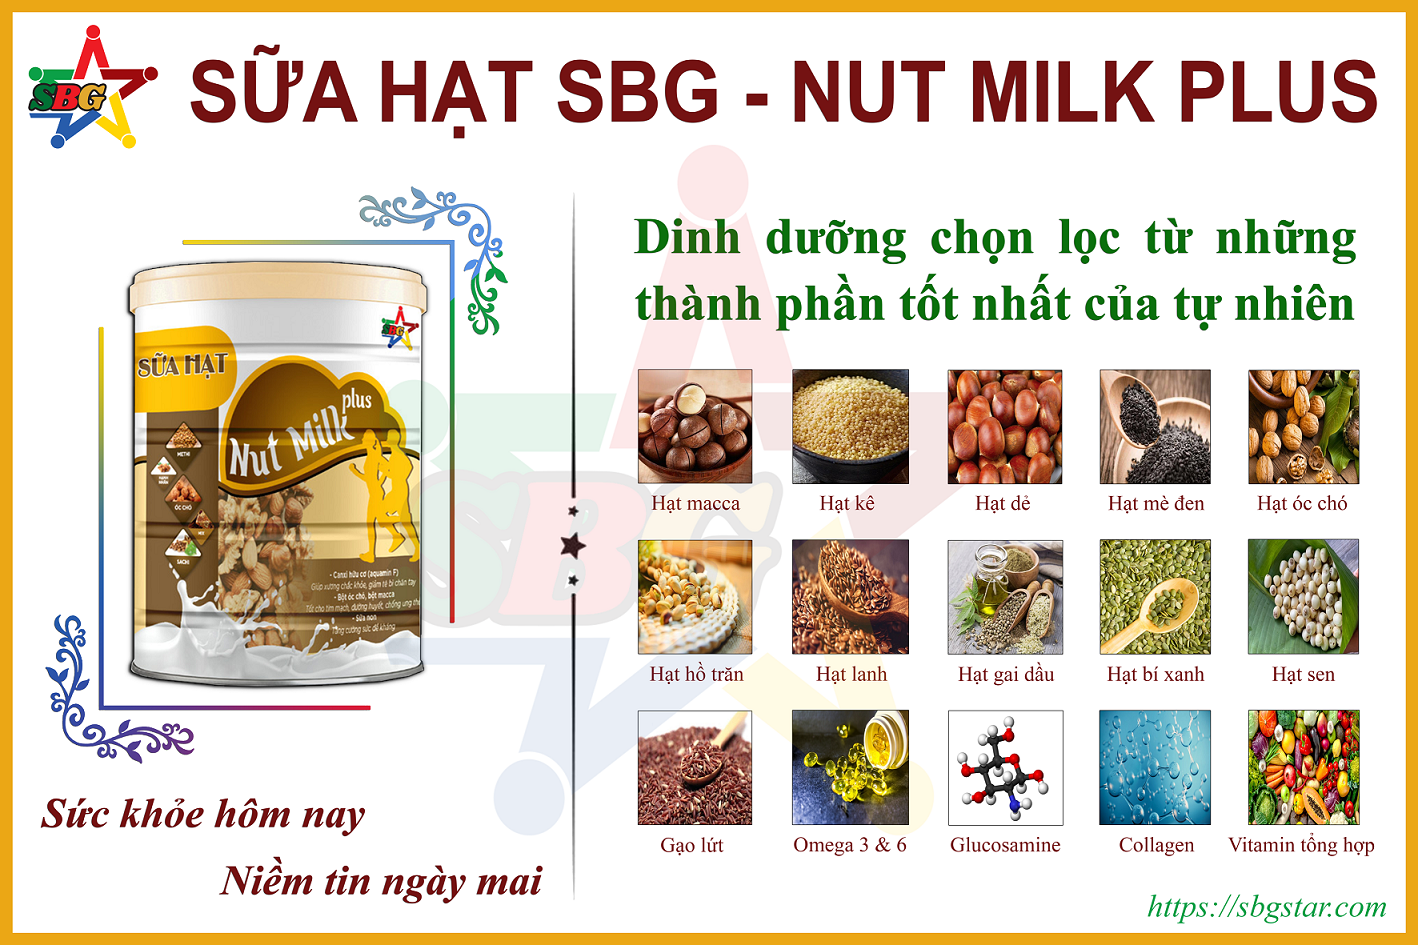 Vì sao lựa chọn sử dụng Sữa hạt SBG - Nut Milk Plus